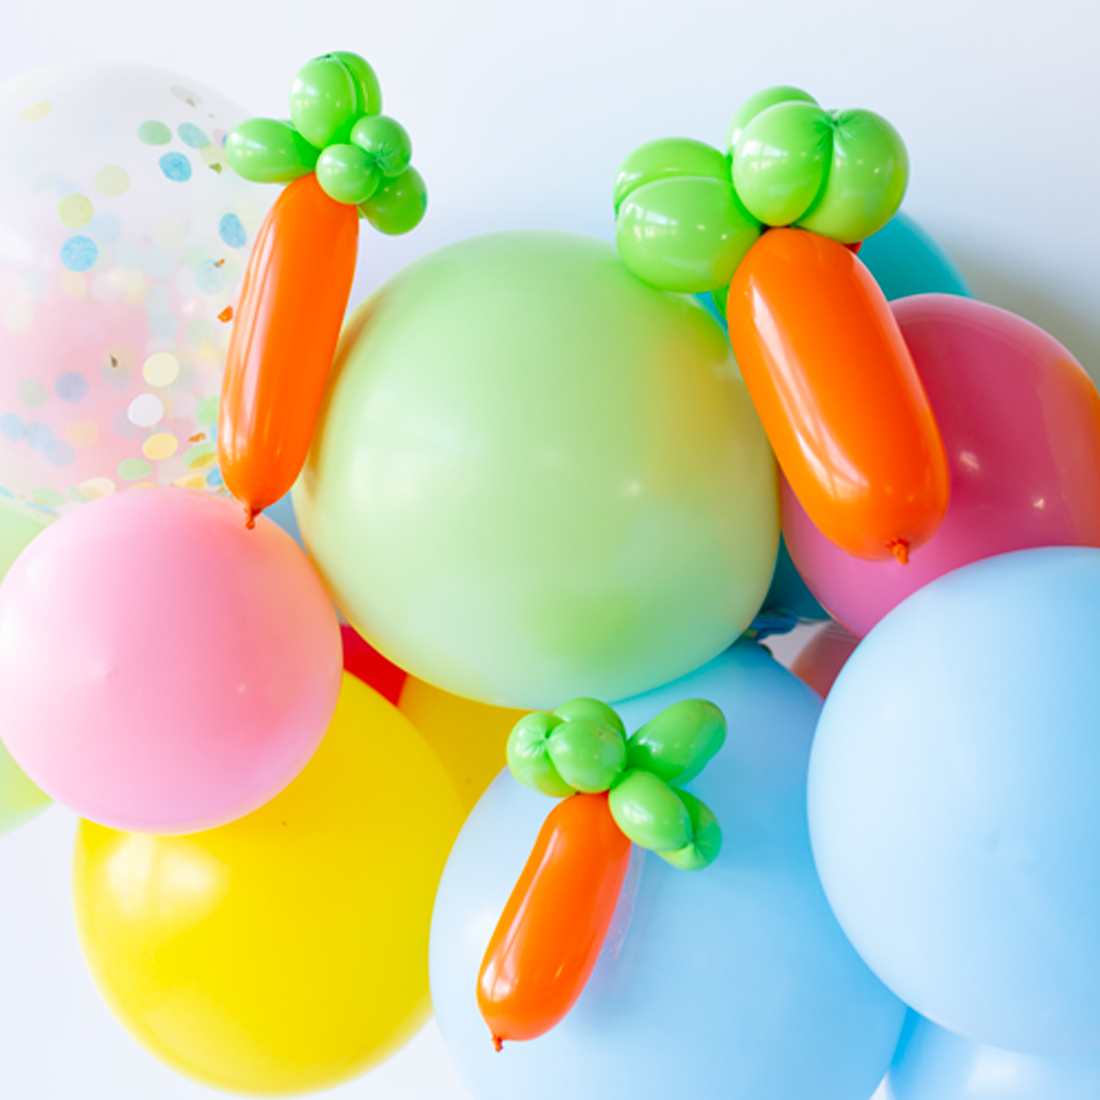 Balloon 'Animal' Kit - Carrot